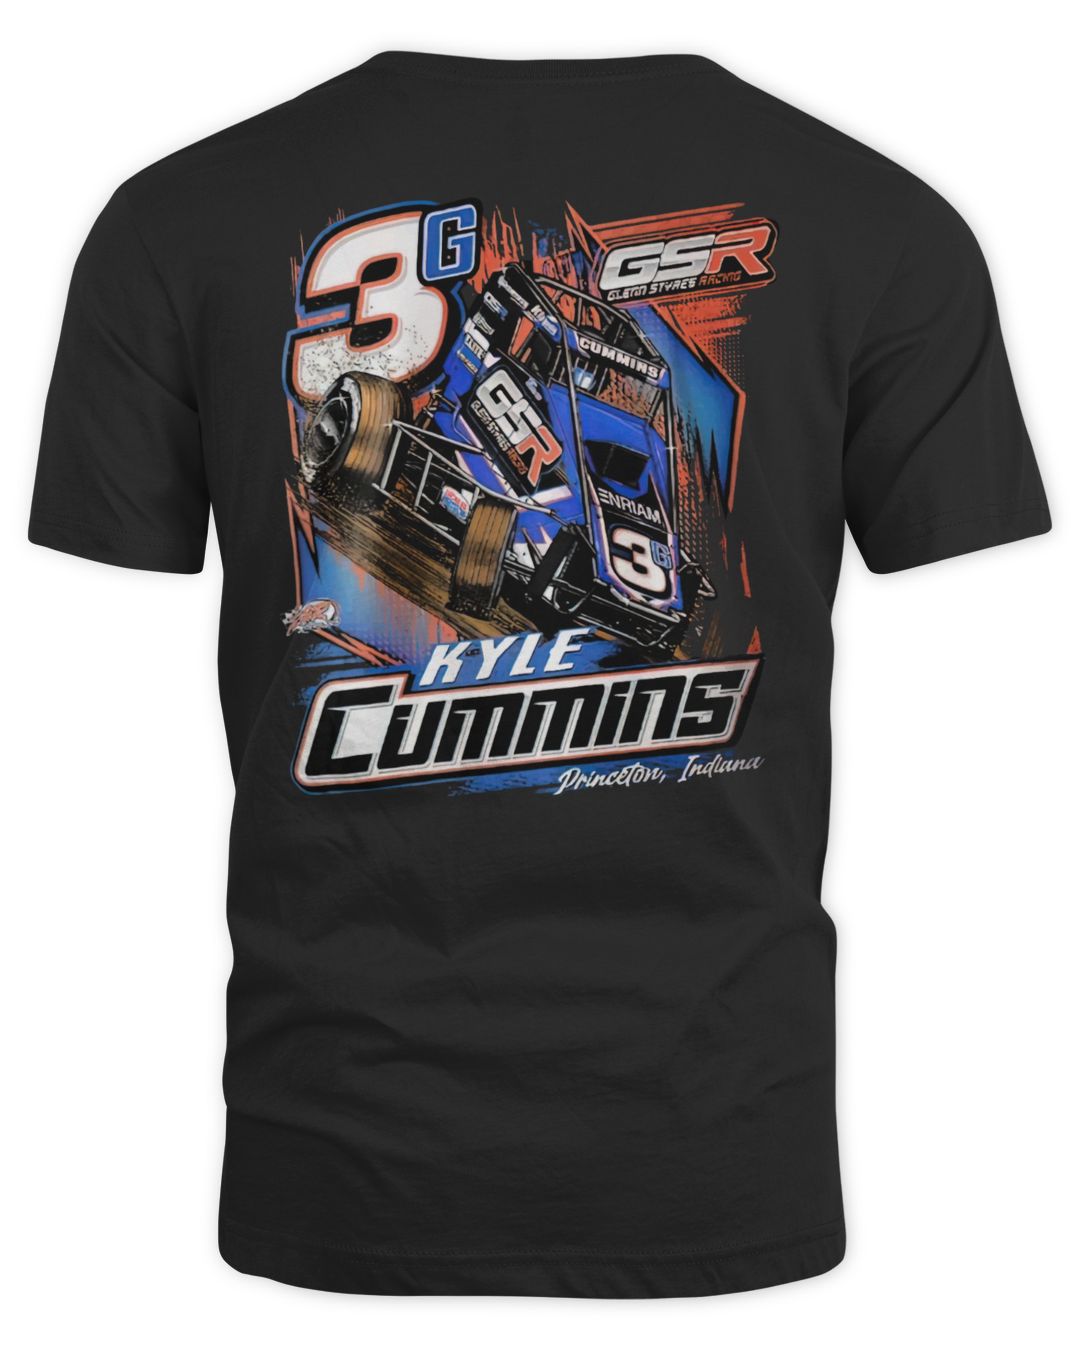 Kyle Cummins Merch 2022 3g Shirt